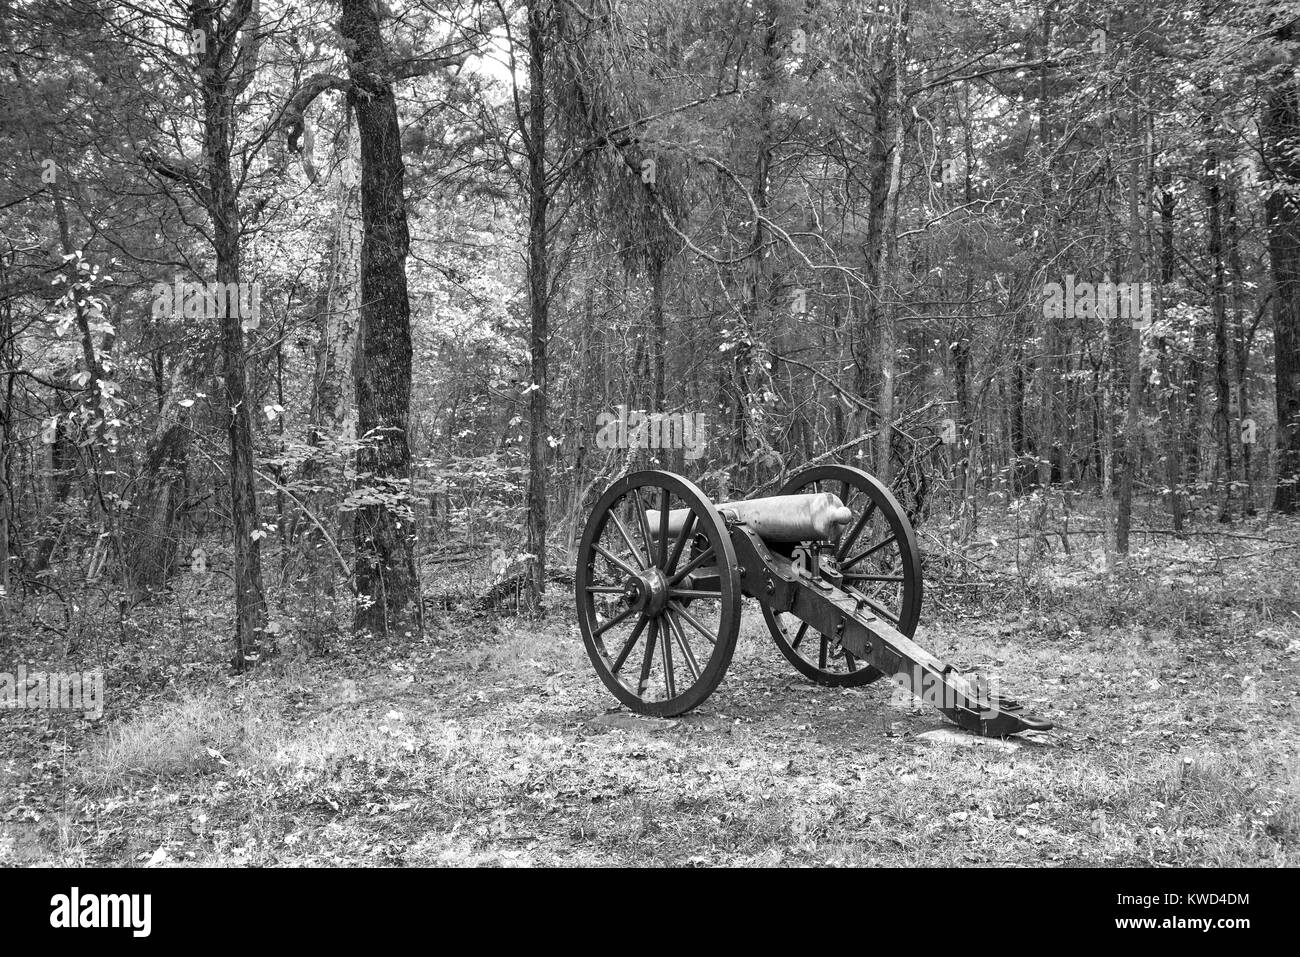 Chickamauga e Chattanooga National Military Park si trova in Georgia e Tennessee ed è stato uno dei più battaglie decisive della guerra civile. Foto Stock